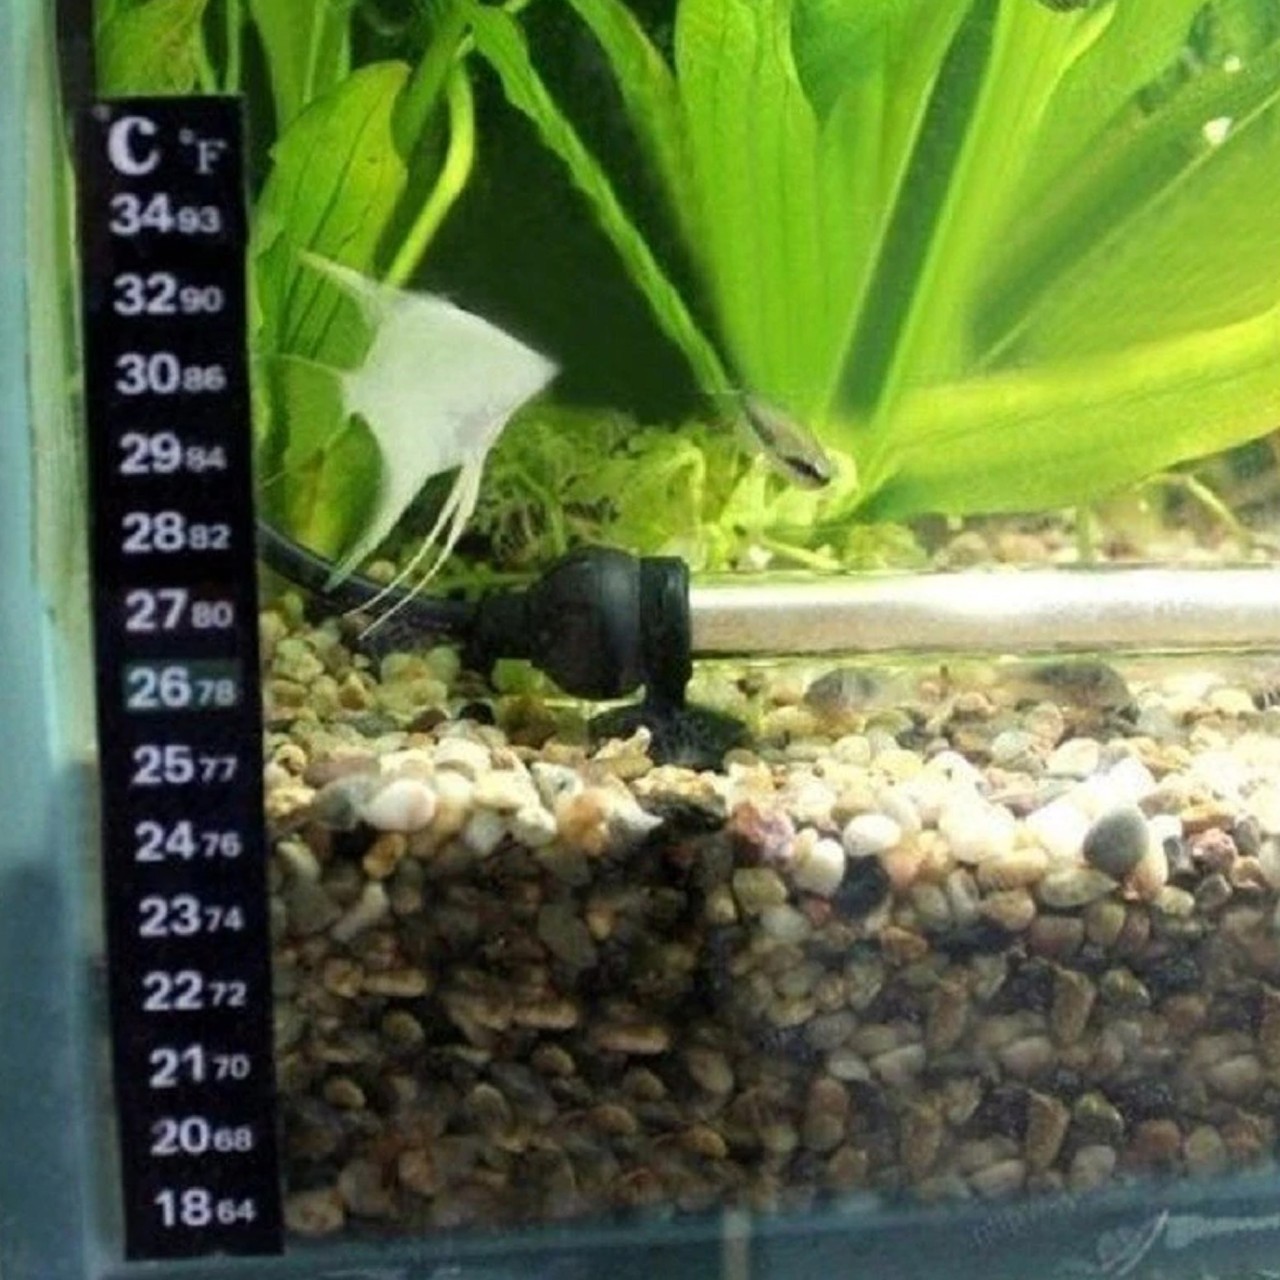 Fish Aquarium Temperature Scale Strip - Fish Tank Water Temperature Meter